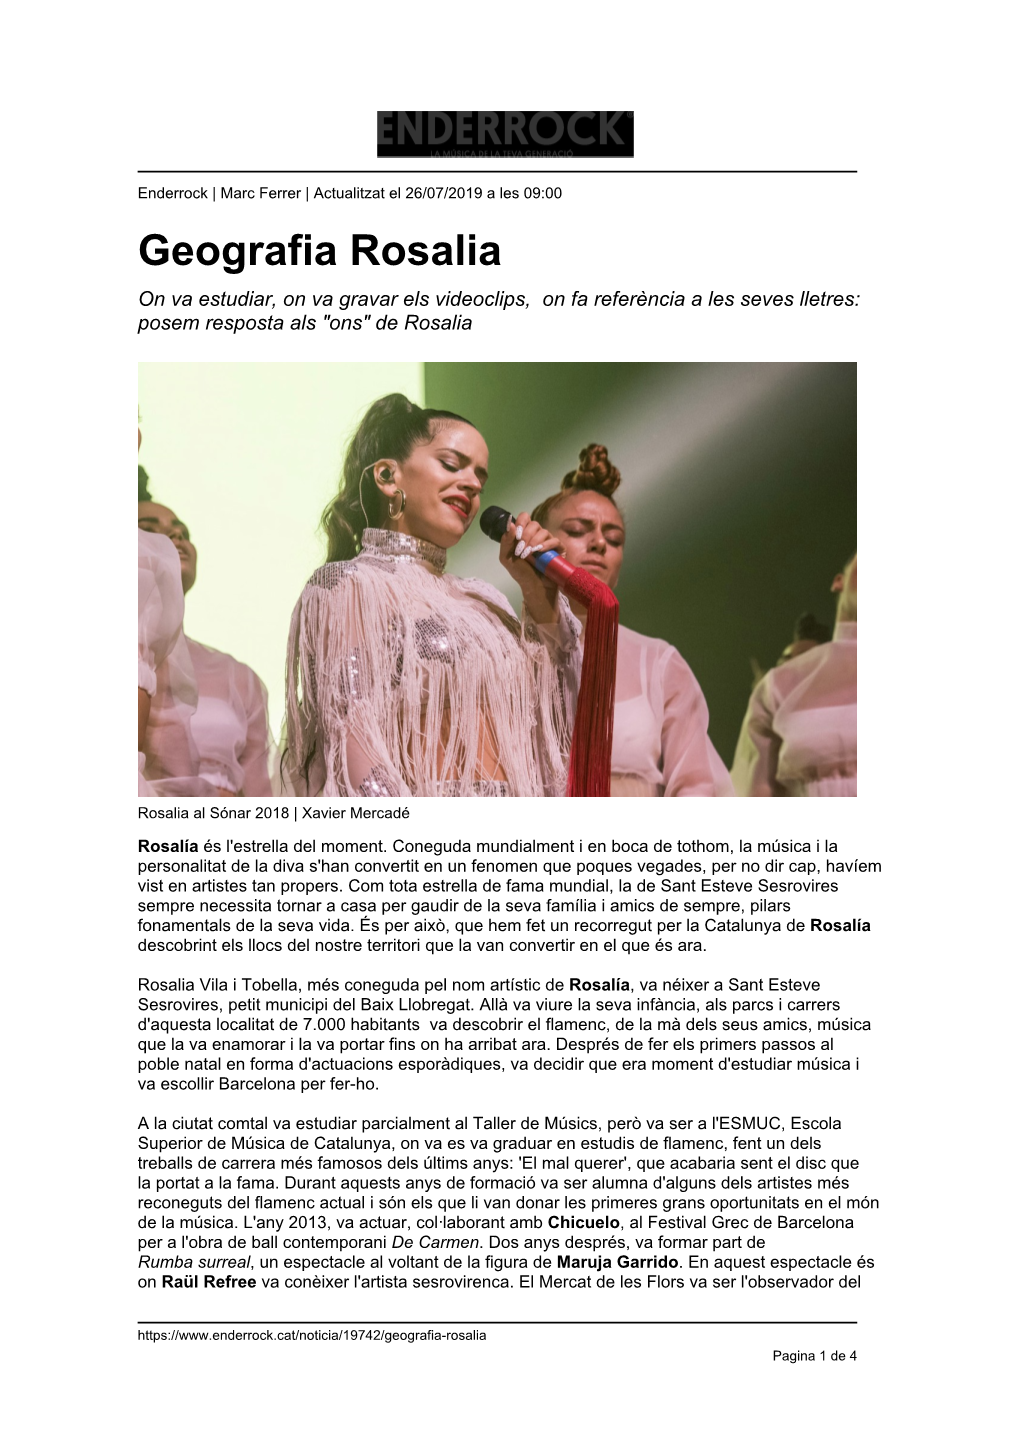 Geografia Rosalia on Va Estudiar, on Va Gravar Els Videoclips, on Fa Referència a Les Seves Lletres: Posem Resposta Als "Ons" De Rosalia